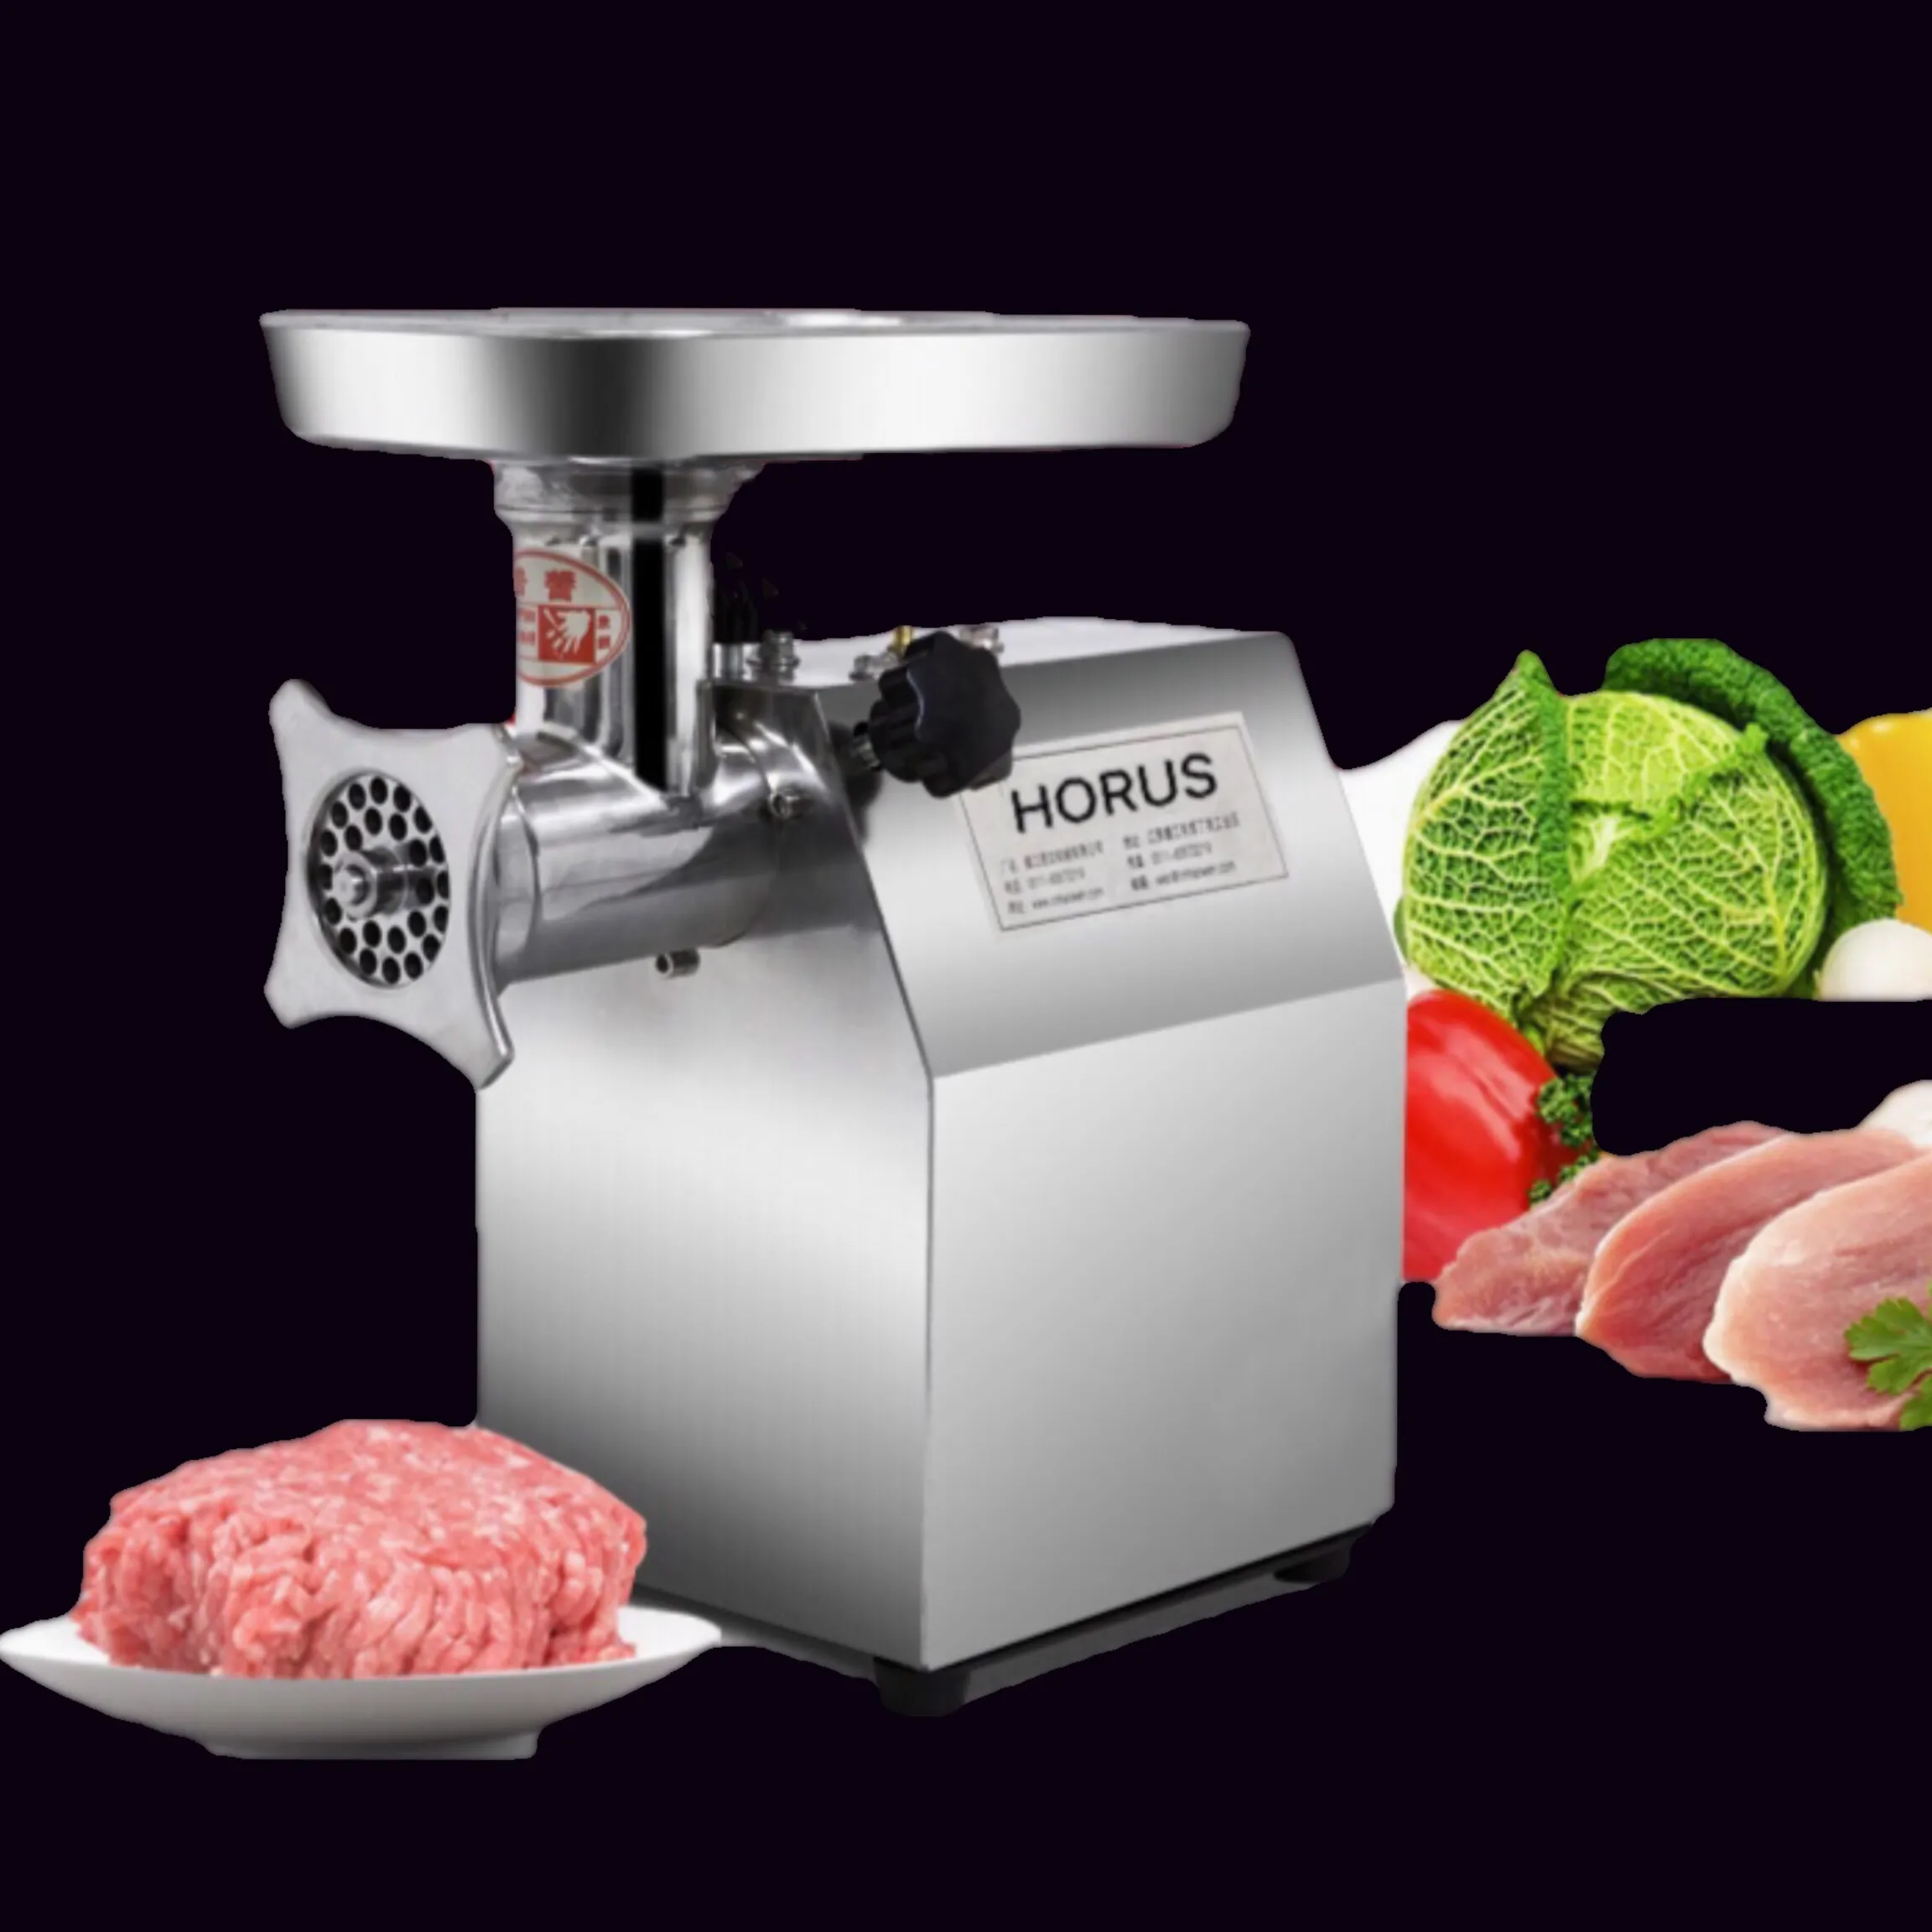 Hohe qualität Industrielle fleisch schleifen Maschine neue elektrische fleischwolf/fleischwolf grinder